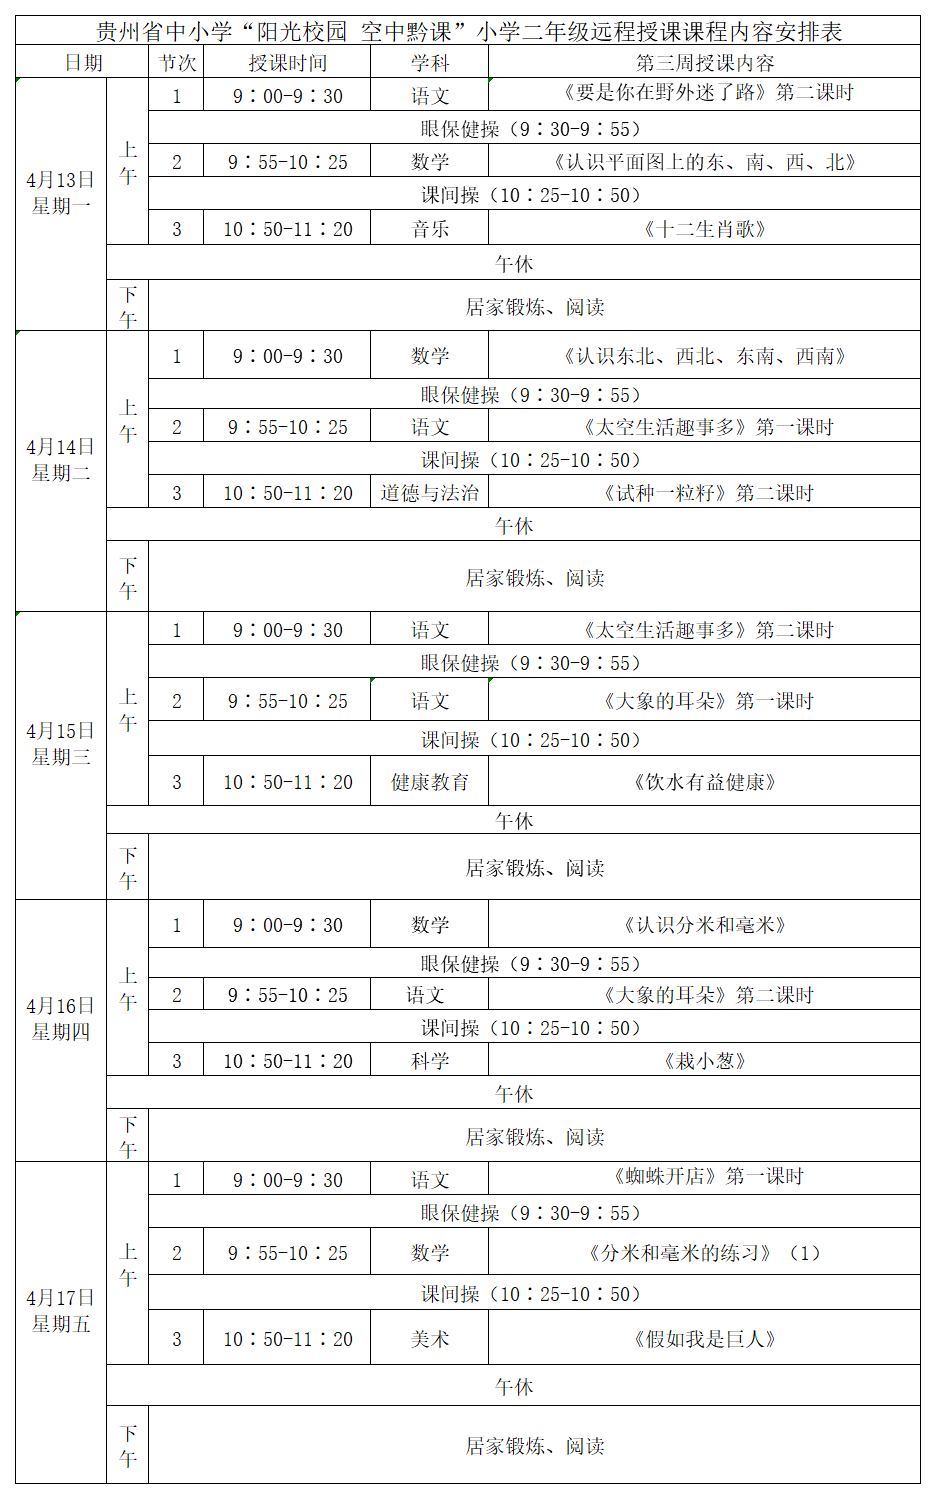 贵州中小学“空中课堂”课程表完整版公布（4月13日13